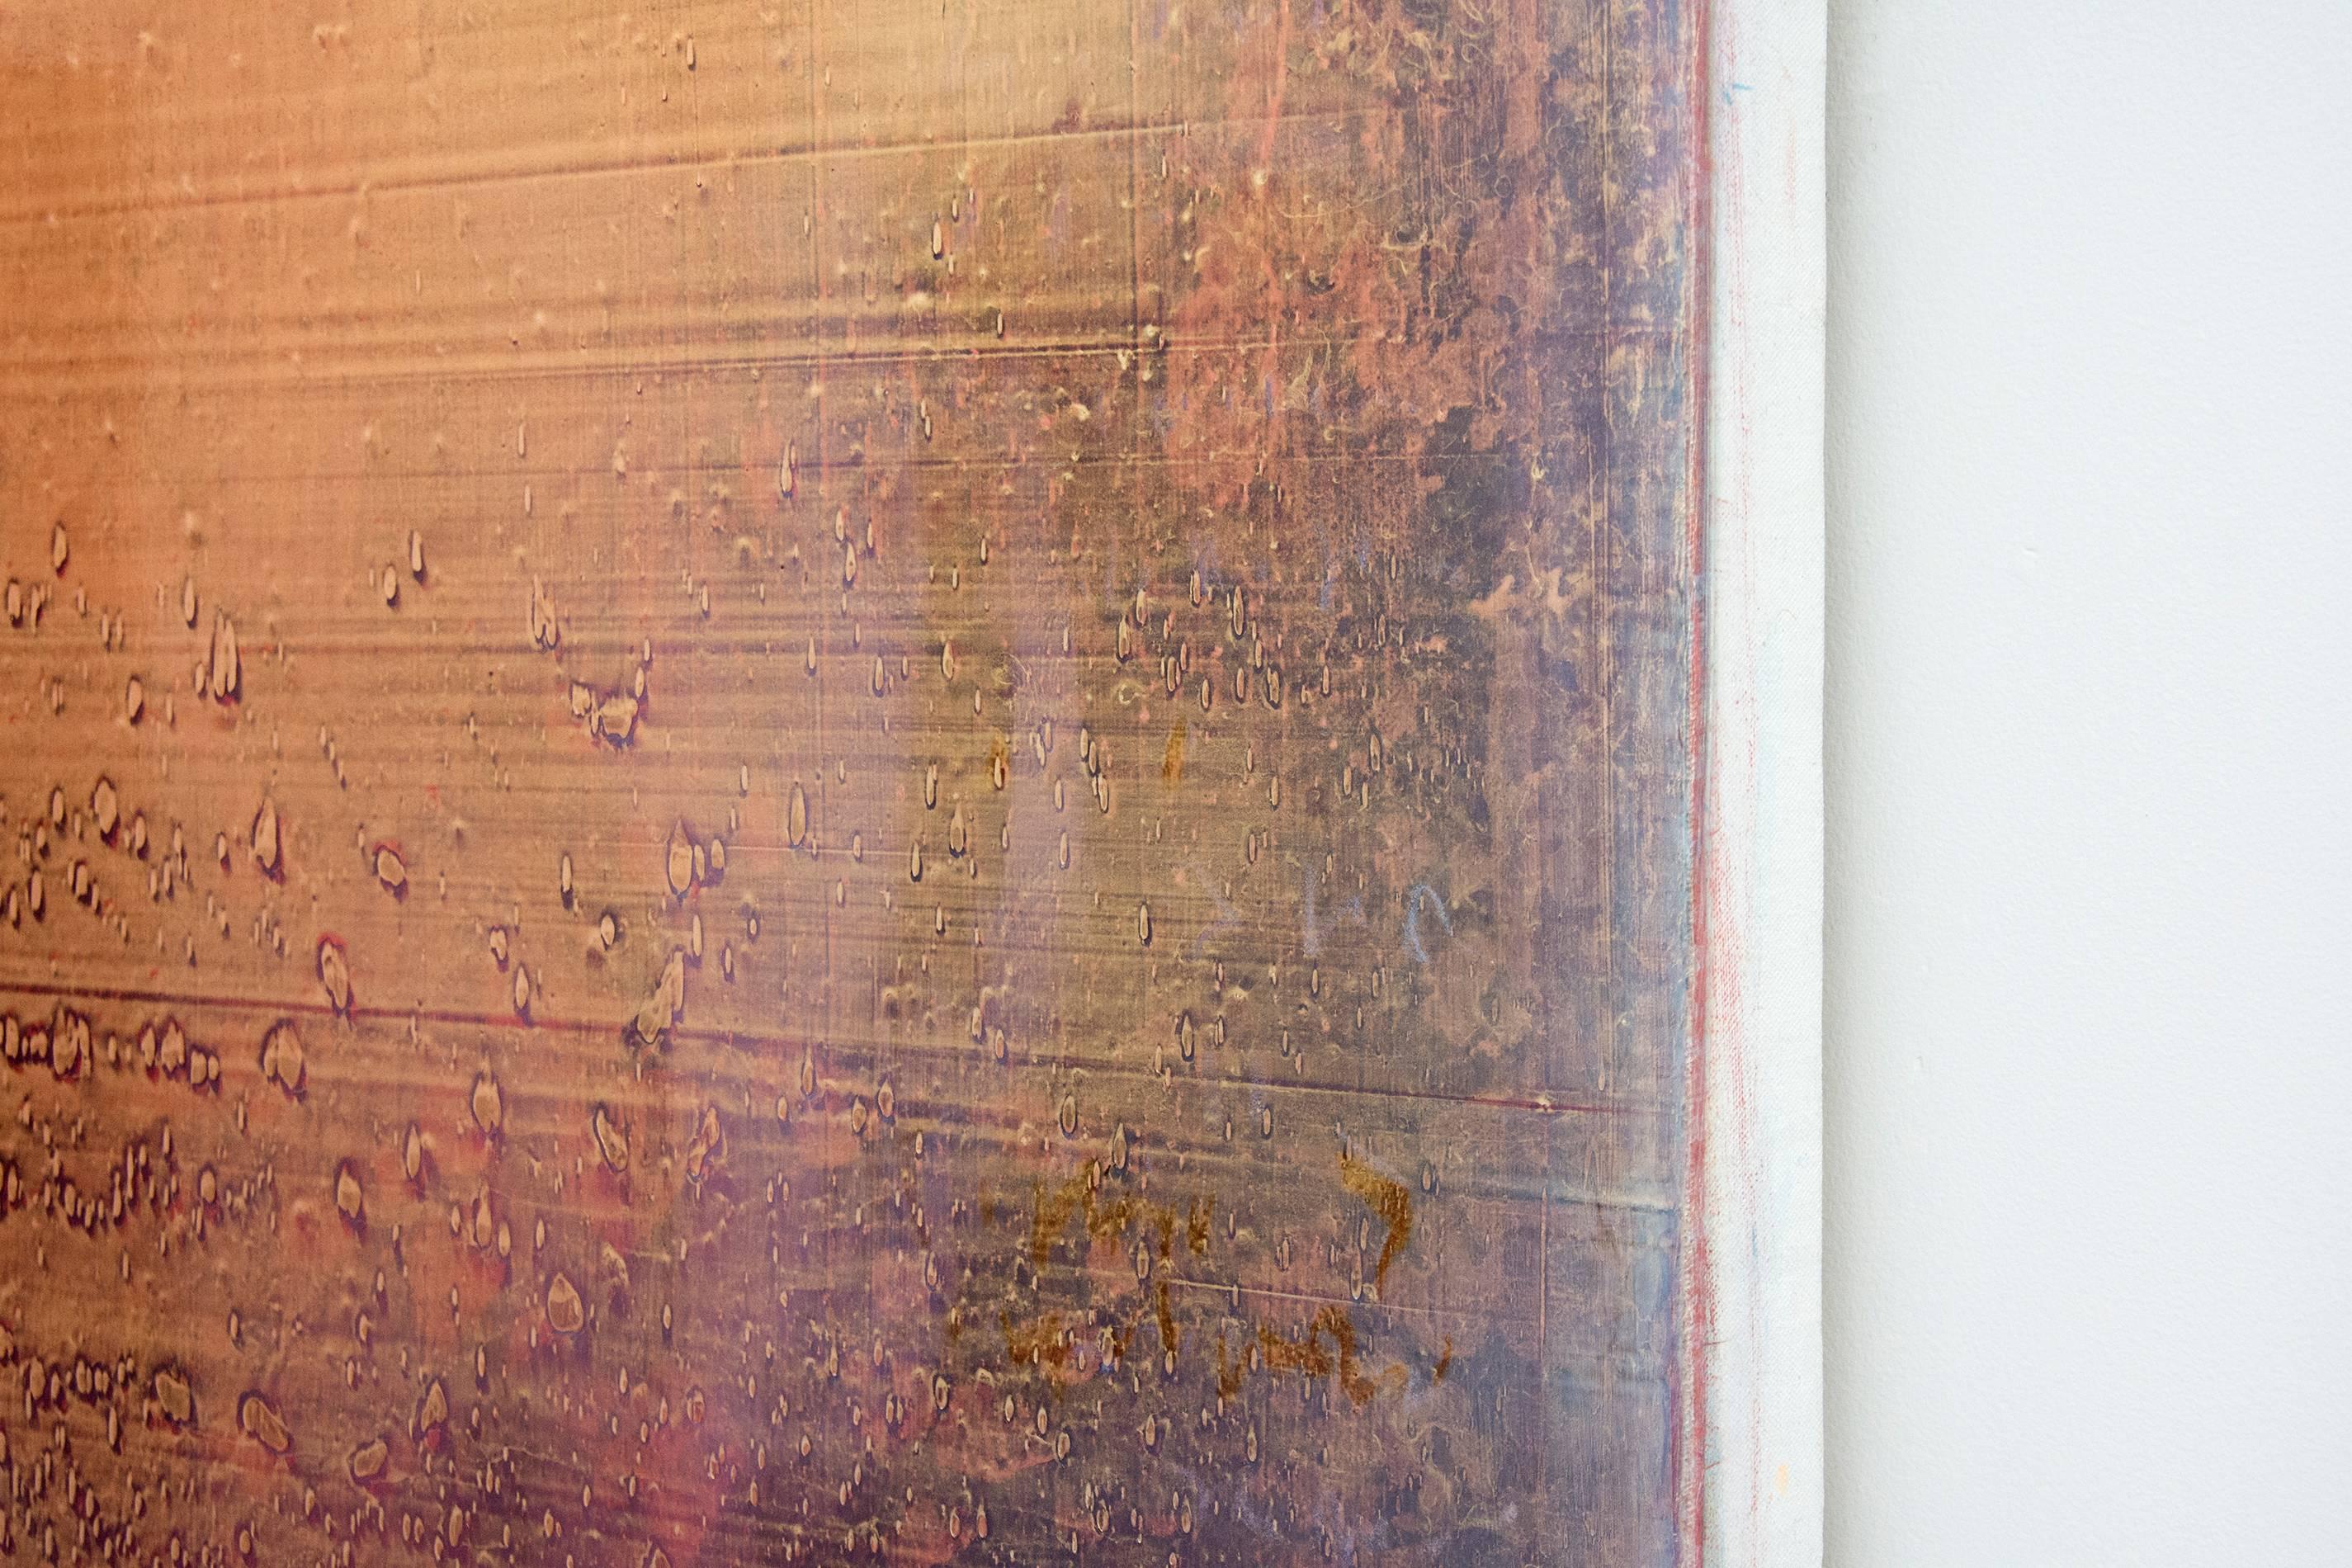 Atomare Mandarine, Kaki, persische Orange, Blütenrosa und rauchige Pflaumen-Nuancen. Die Farben dieses Gemäldes verändern sich, wenn sich der Betrachter bewegt, und erzeugen ein Gefühl von Tiefe und innerem Licht.

